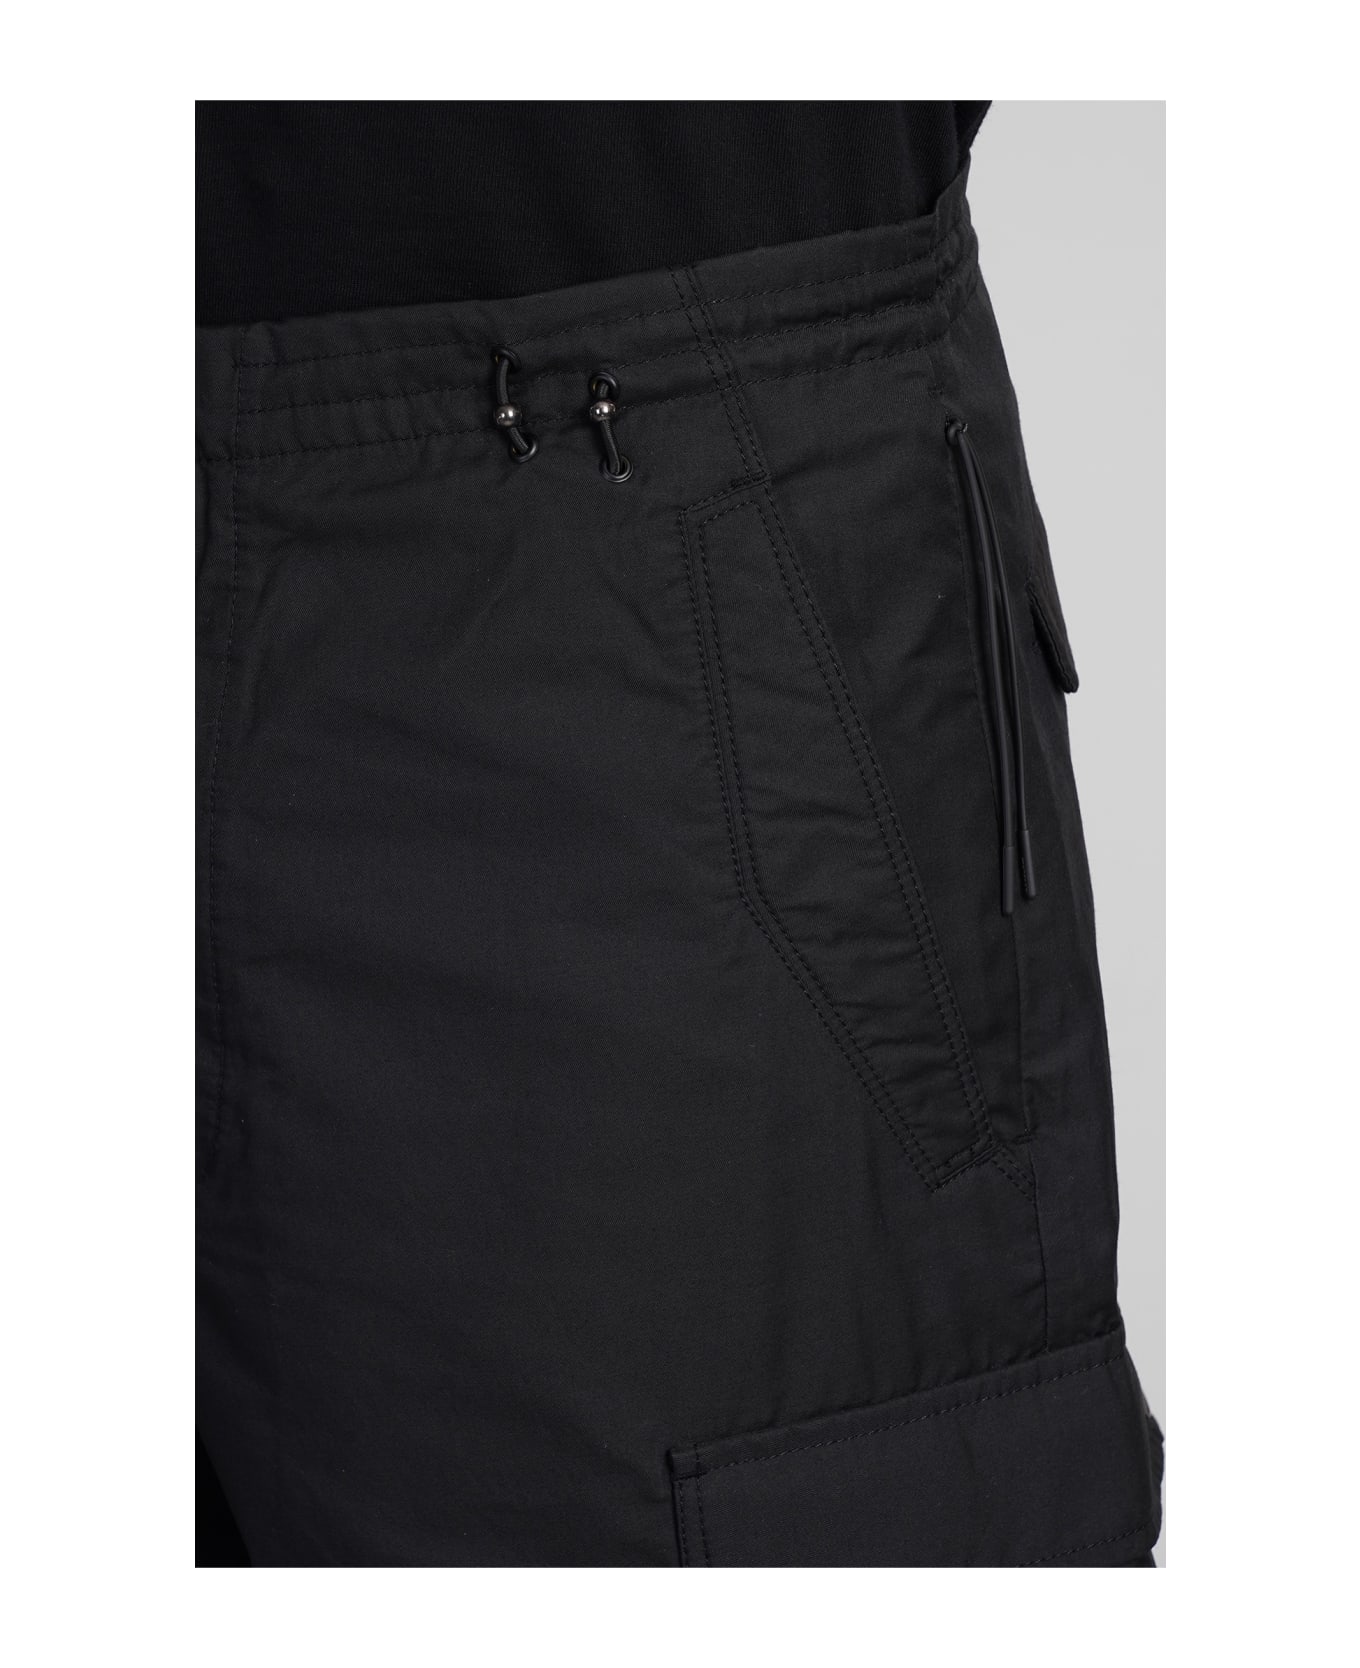 Maharishi Shorts In Black Cotton - black